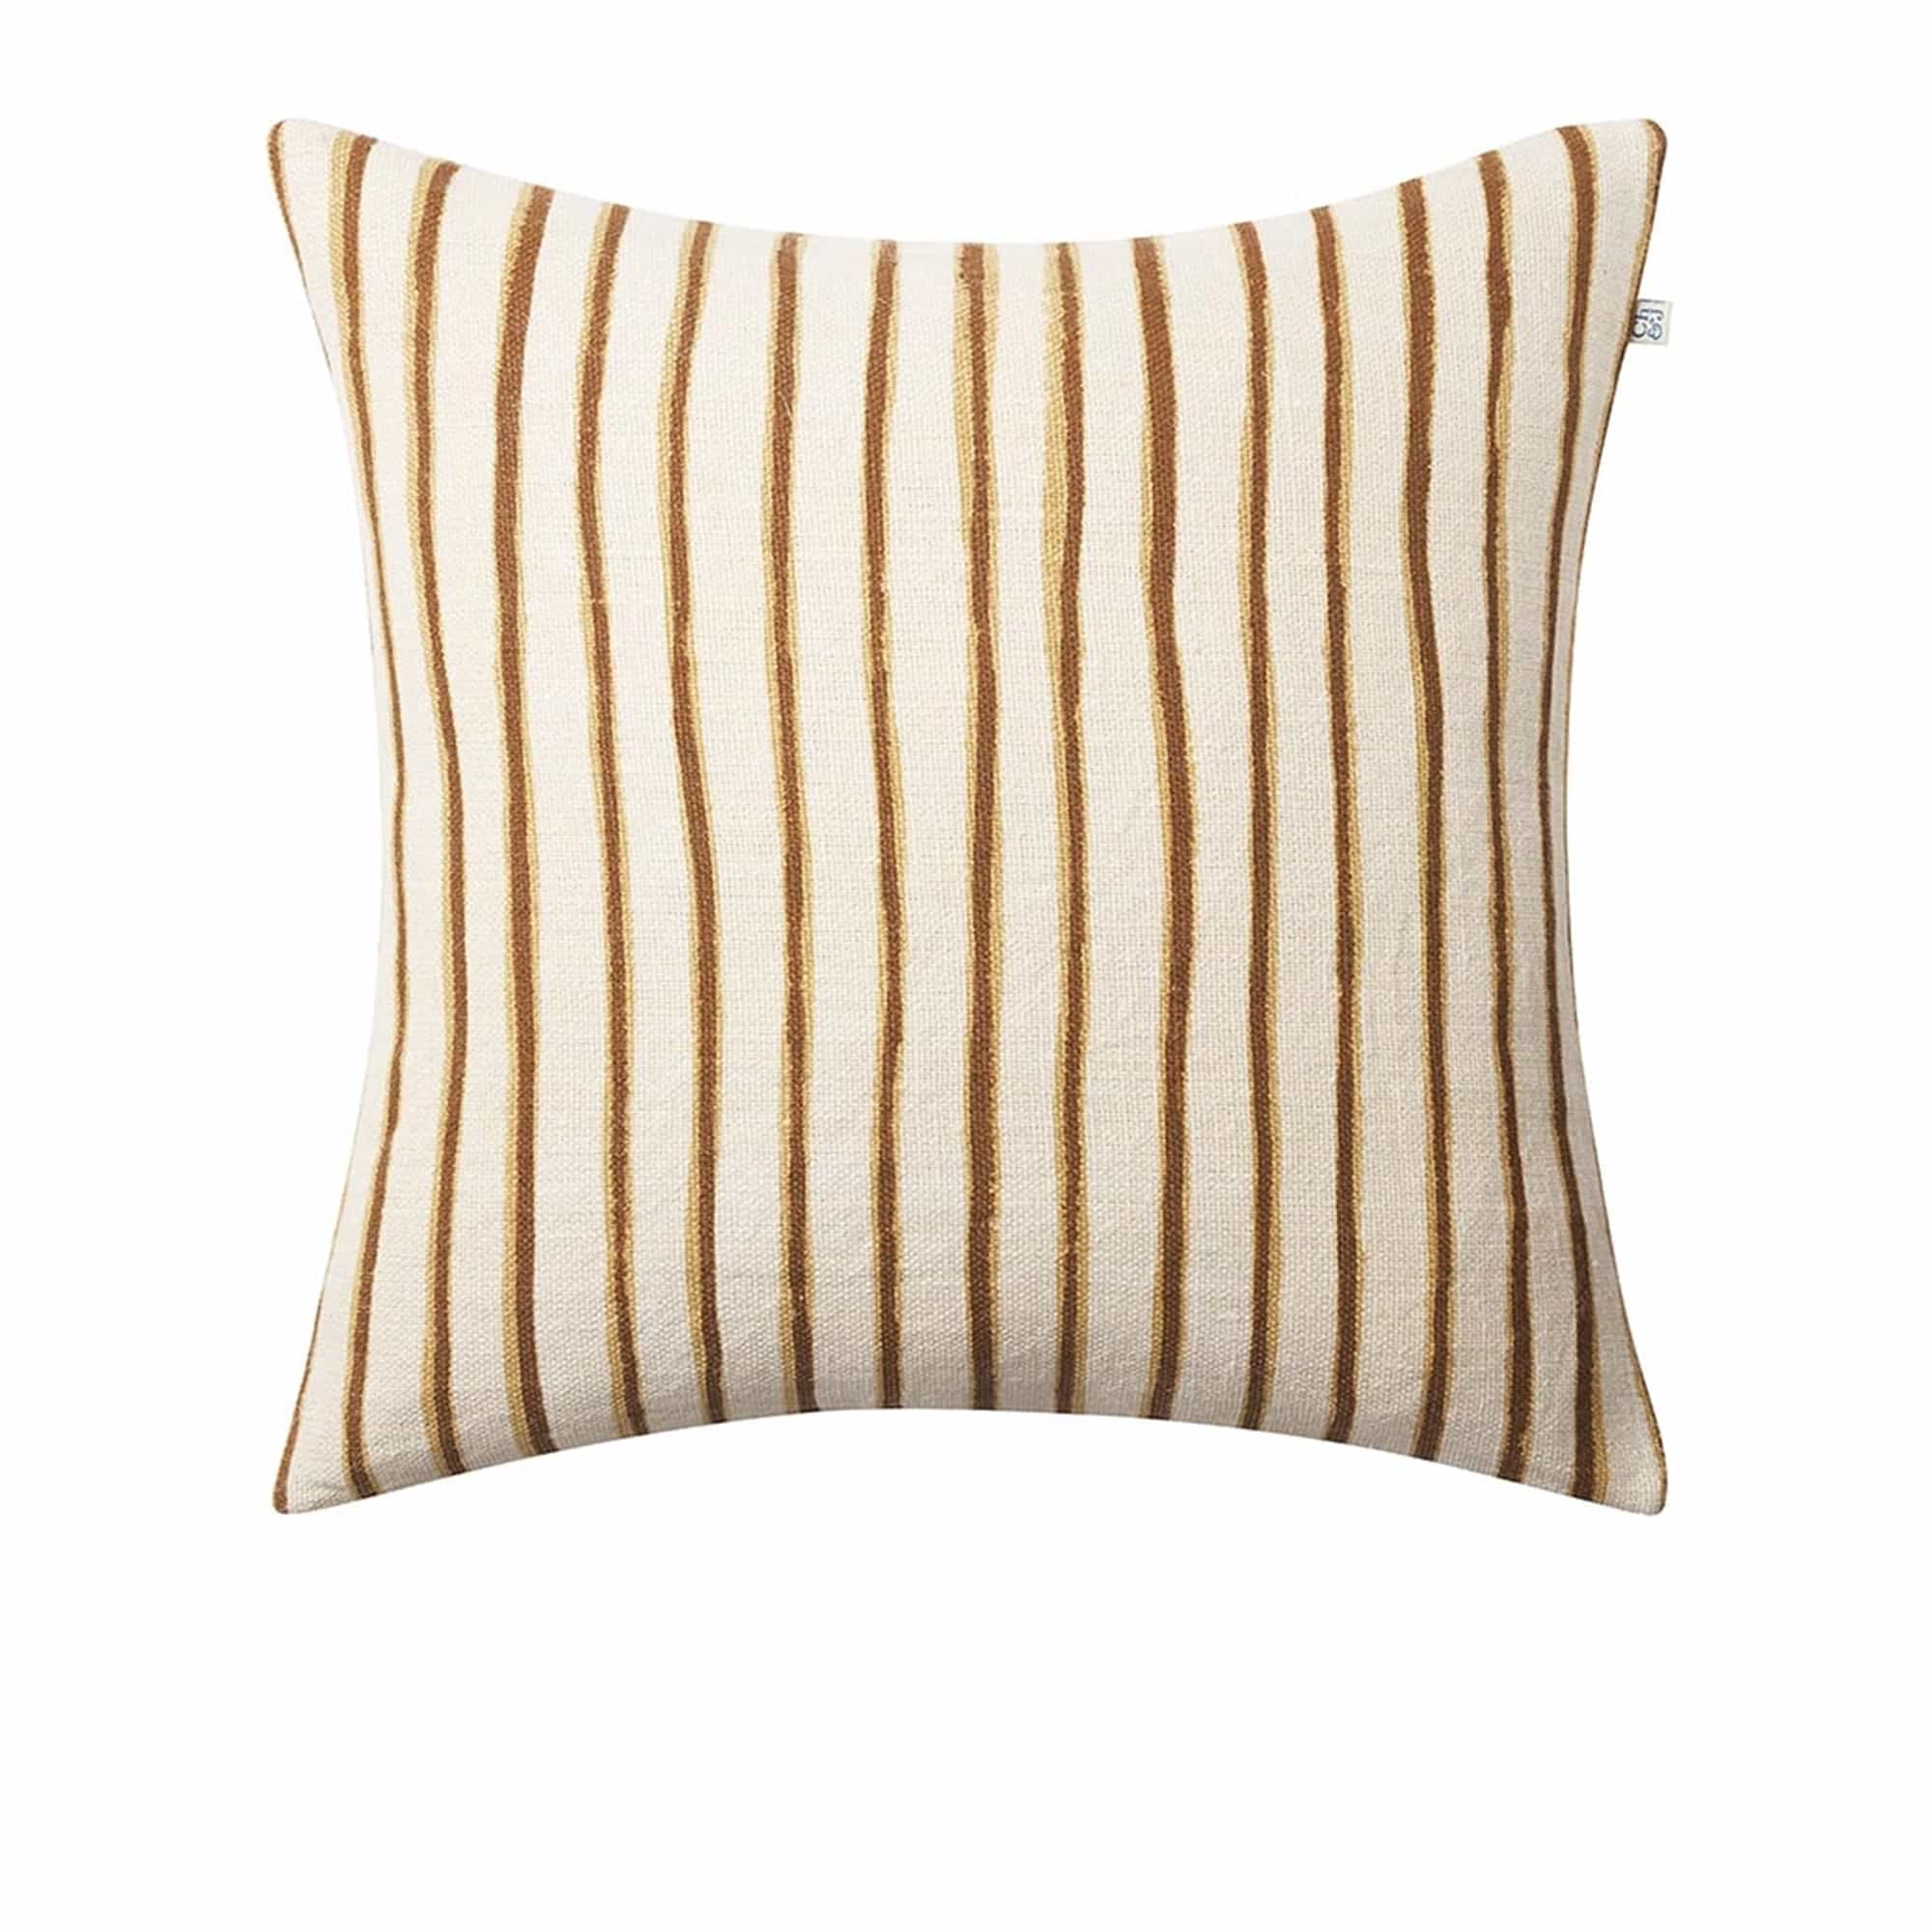 Jaipur Stripe Cushion Cover